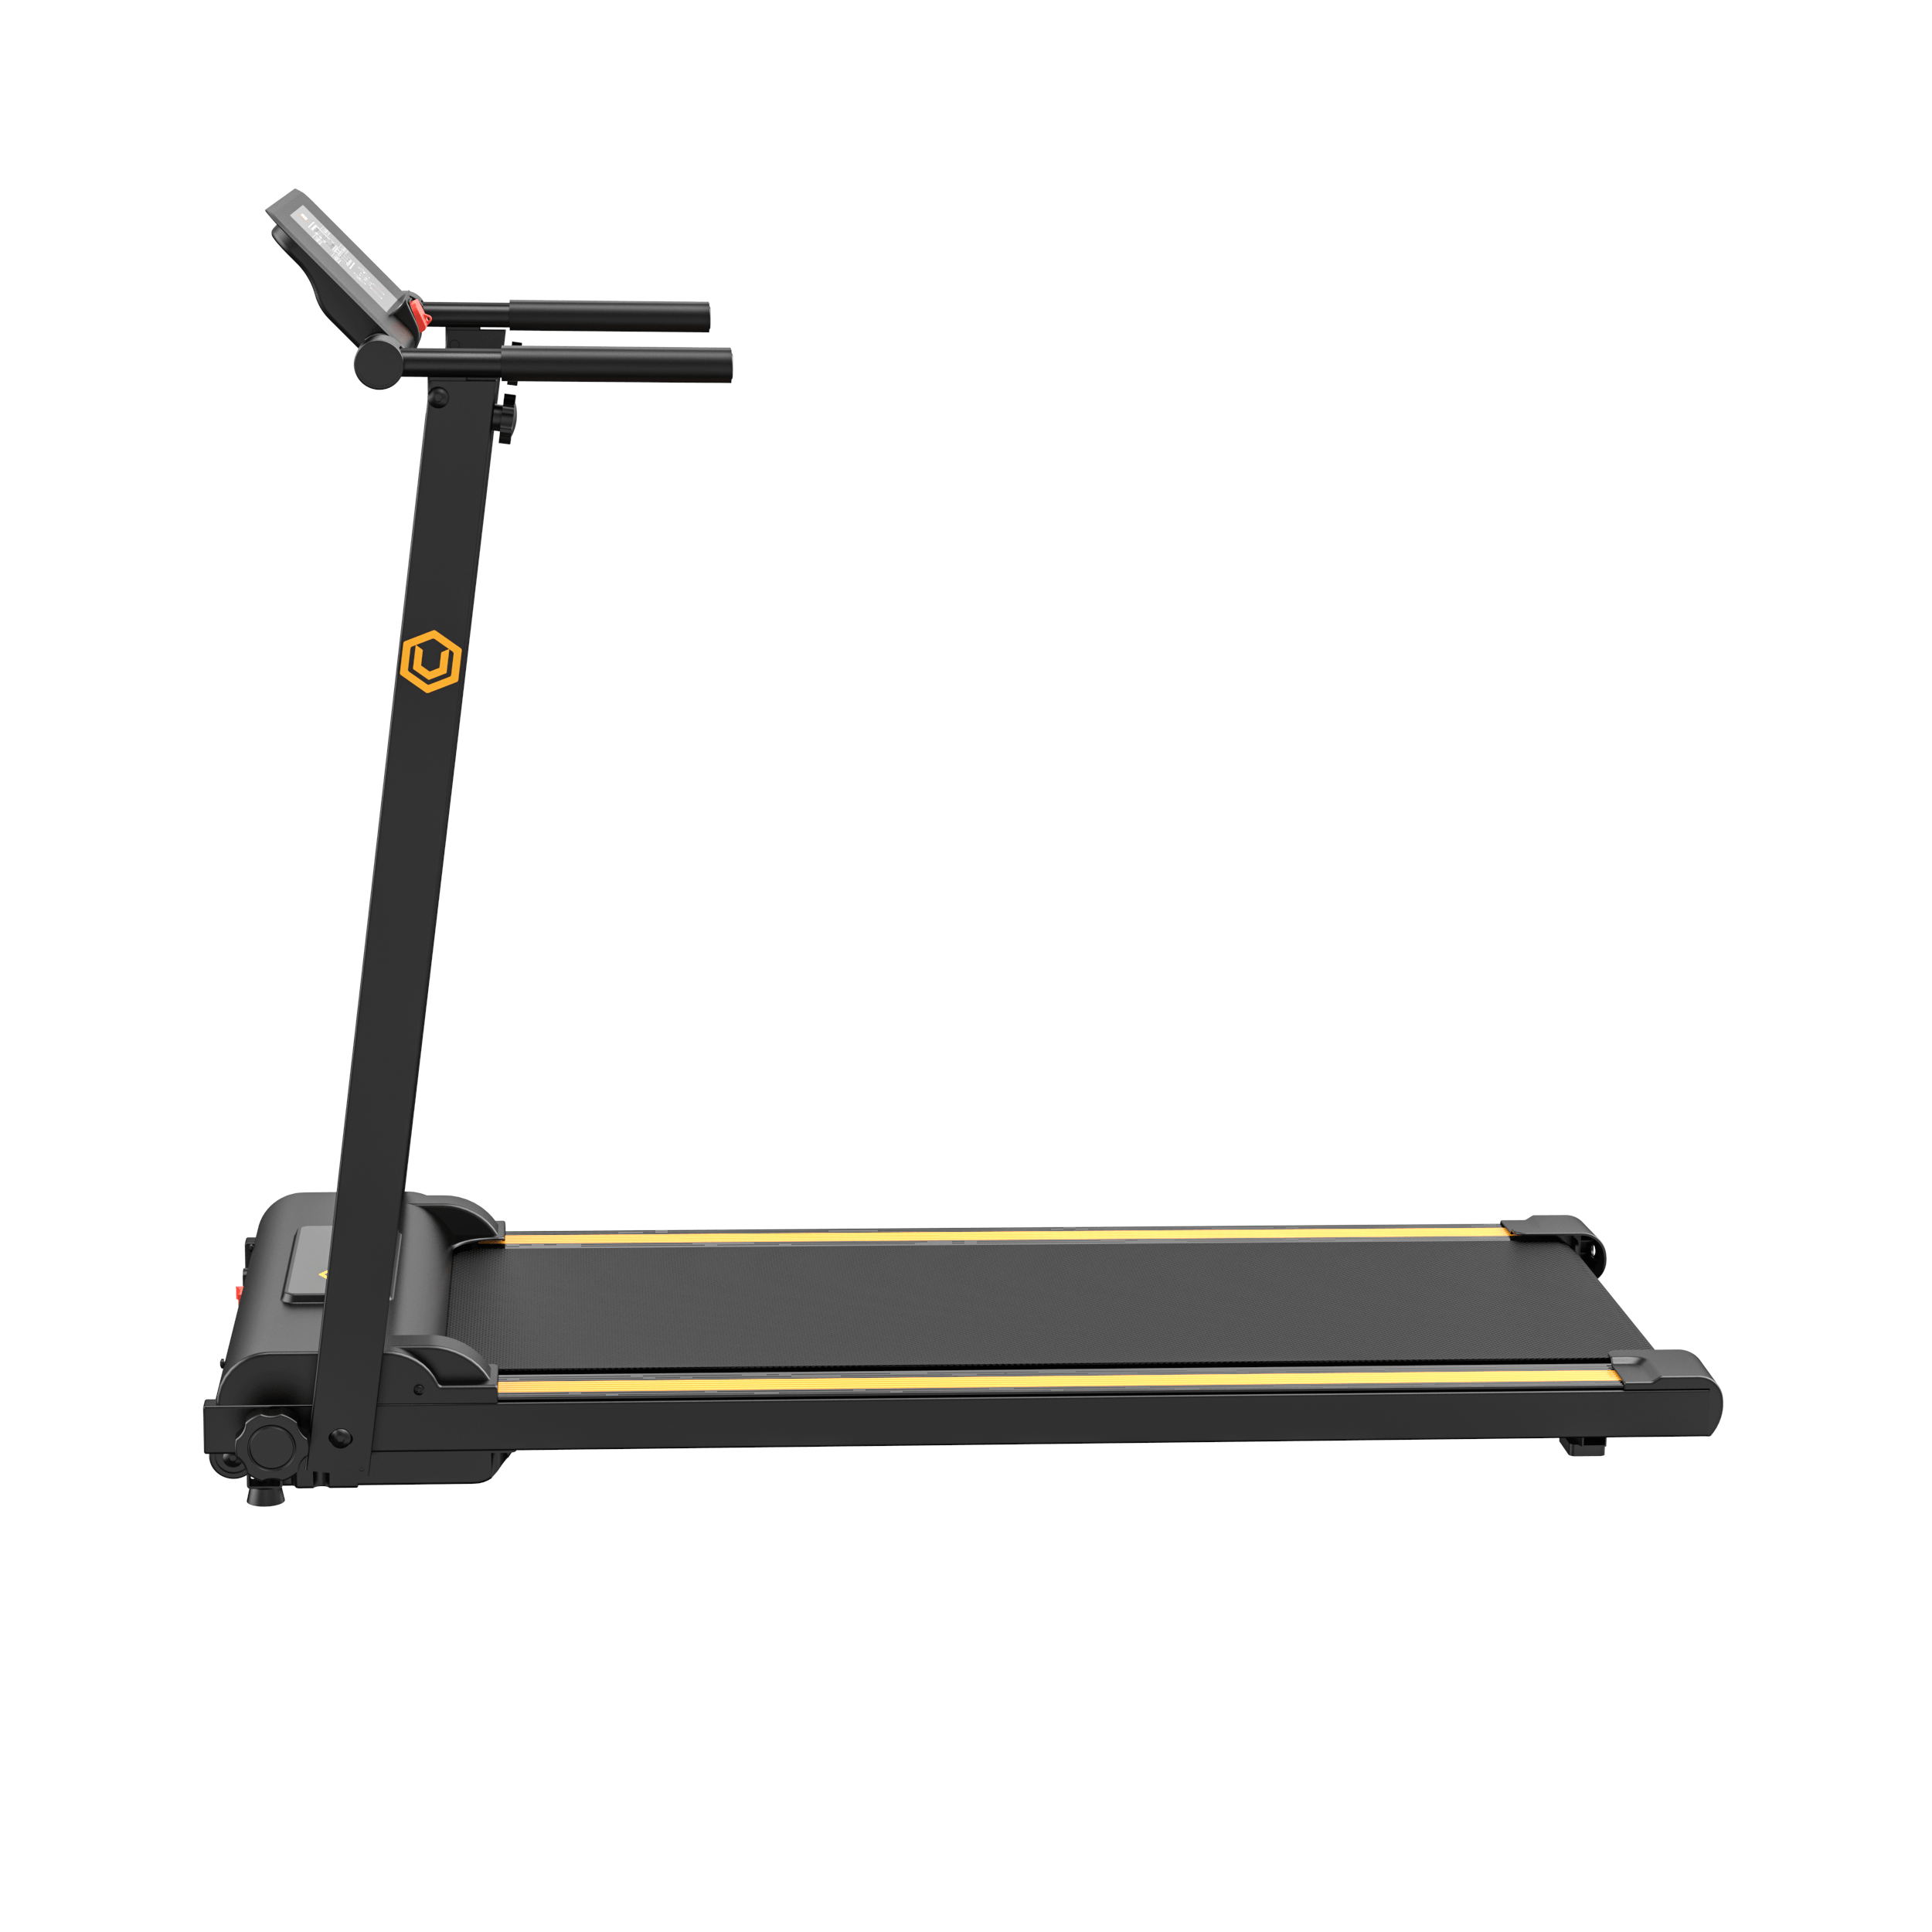 Urevo  Foldi - Mini Folding Treadmill 